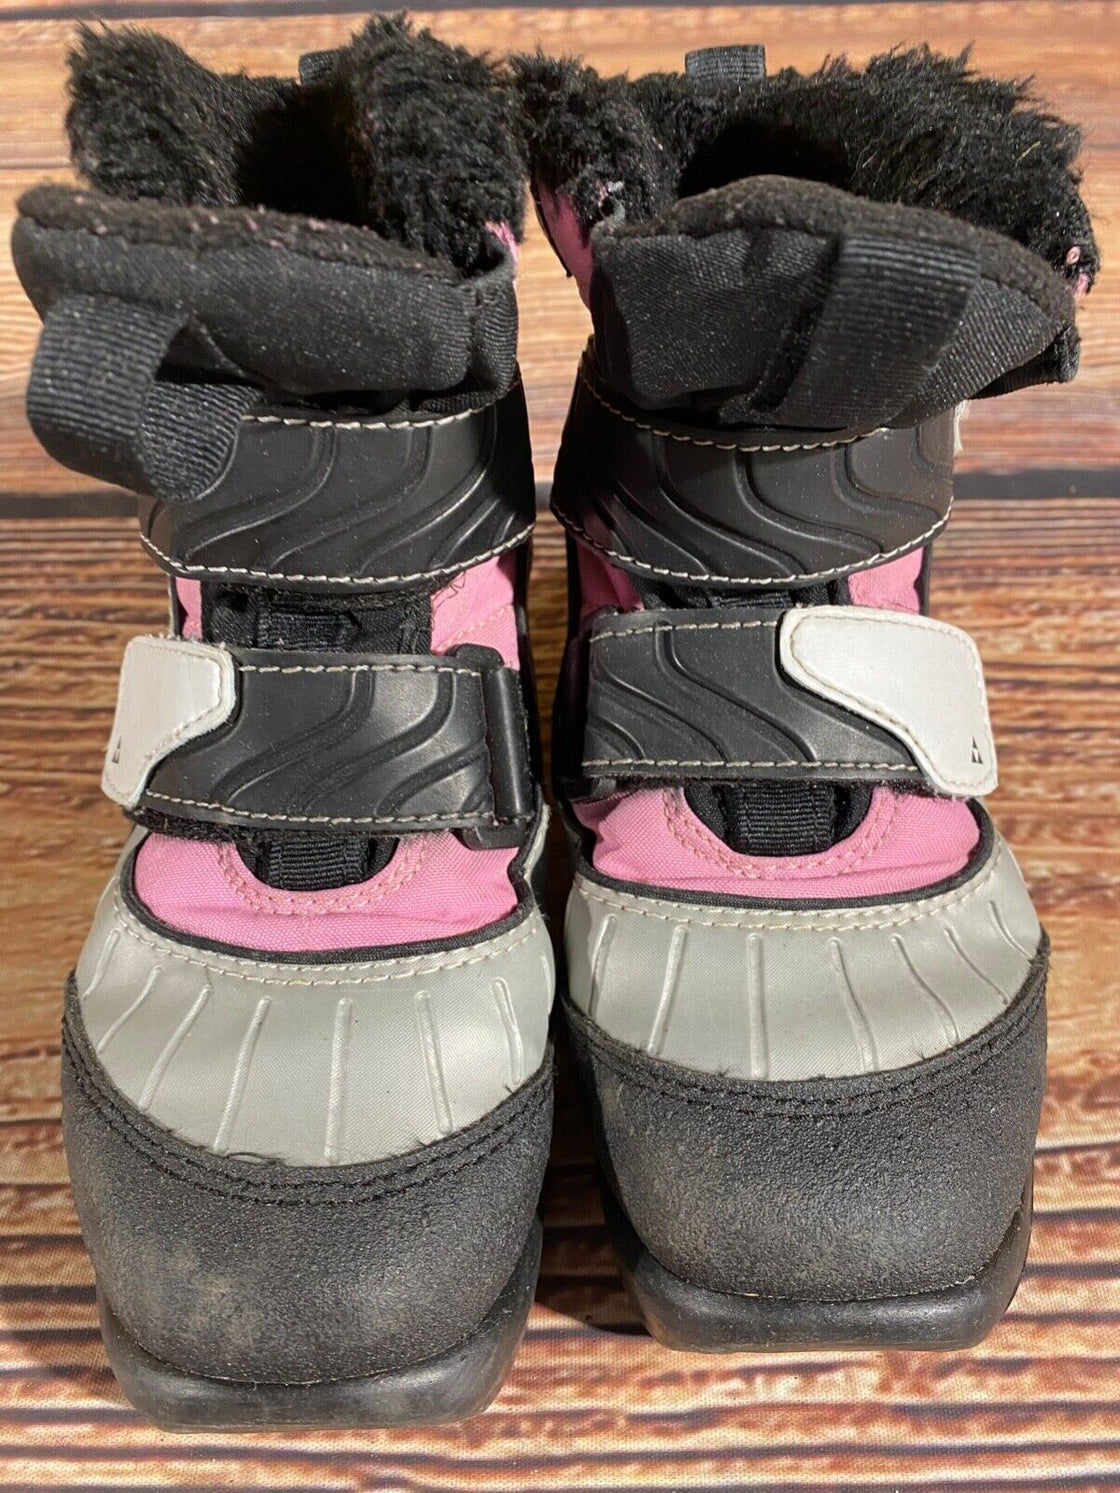 Fischer Snowstar Kids Nordic Cross Country Ski Boots Size EU31 US12.5 NNN F-368